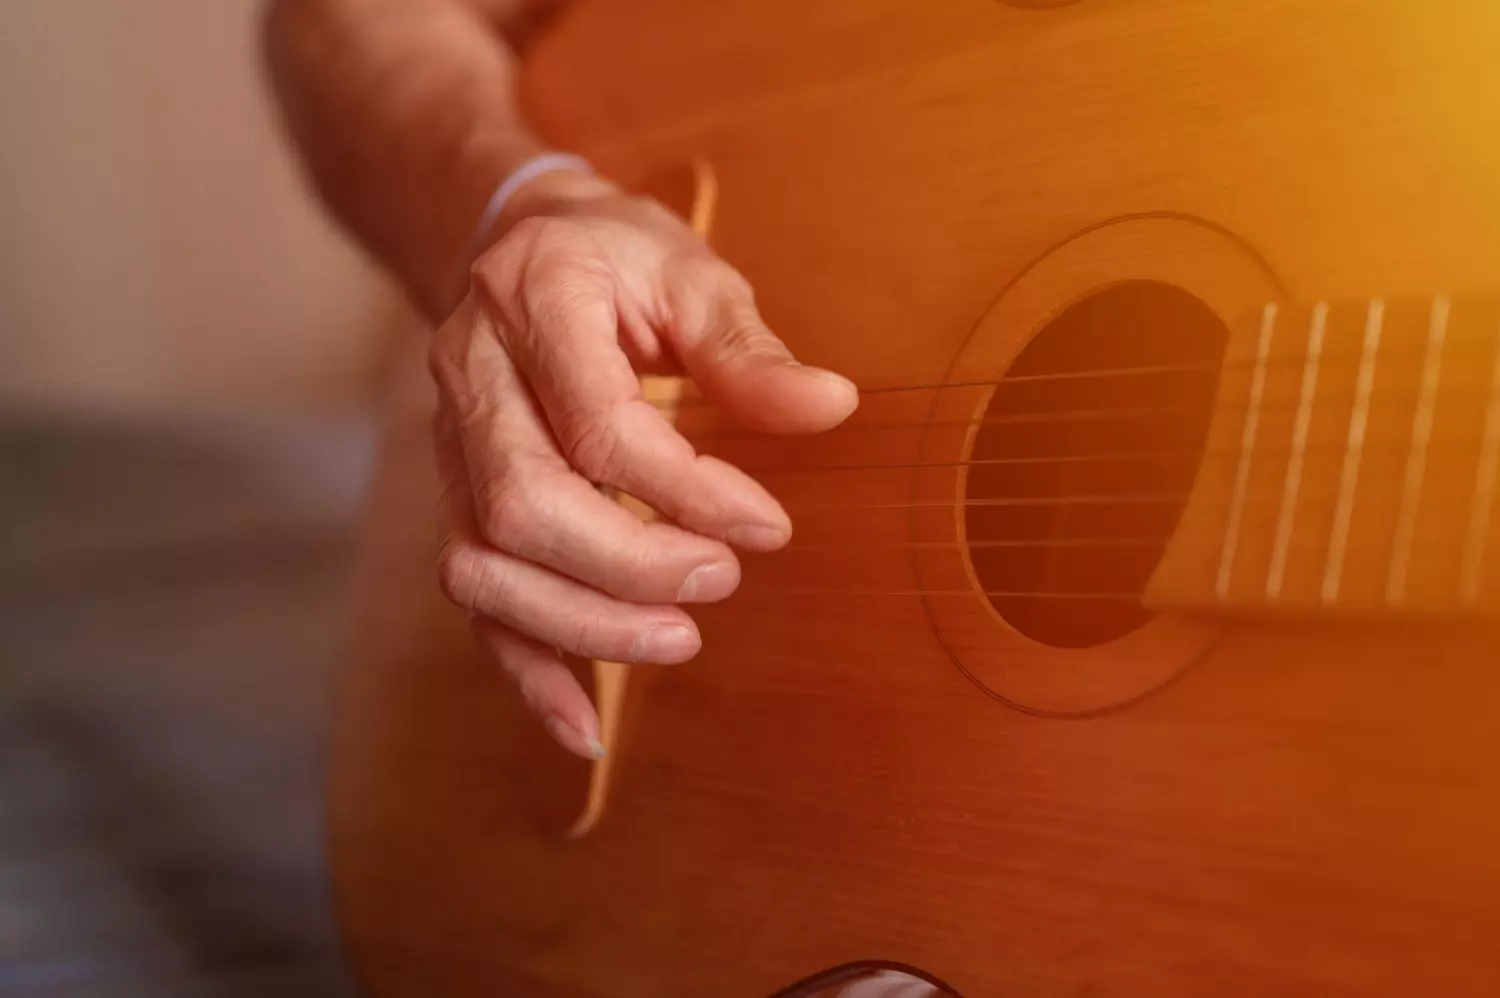 le jeu aux doigts ou arpège sur une guitare classique